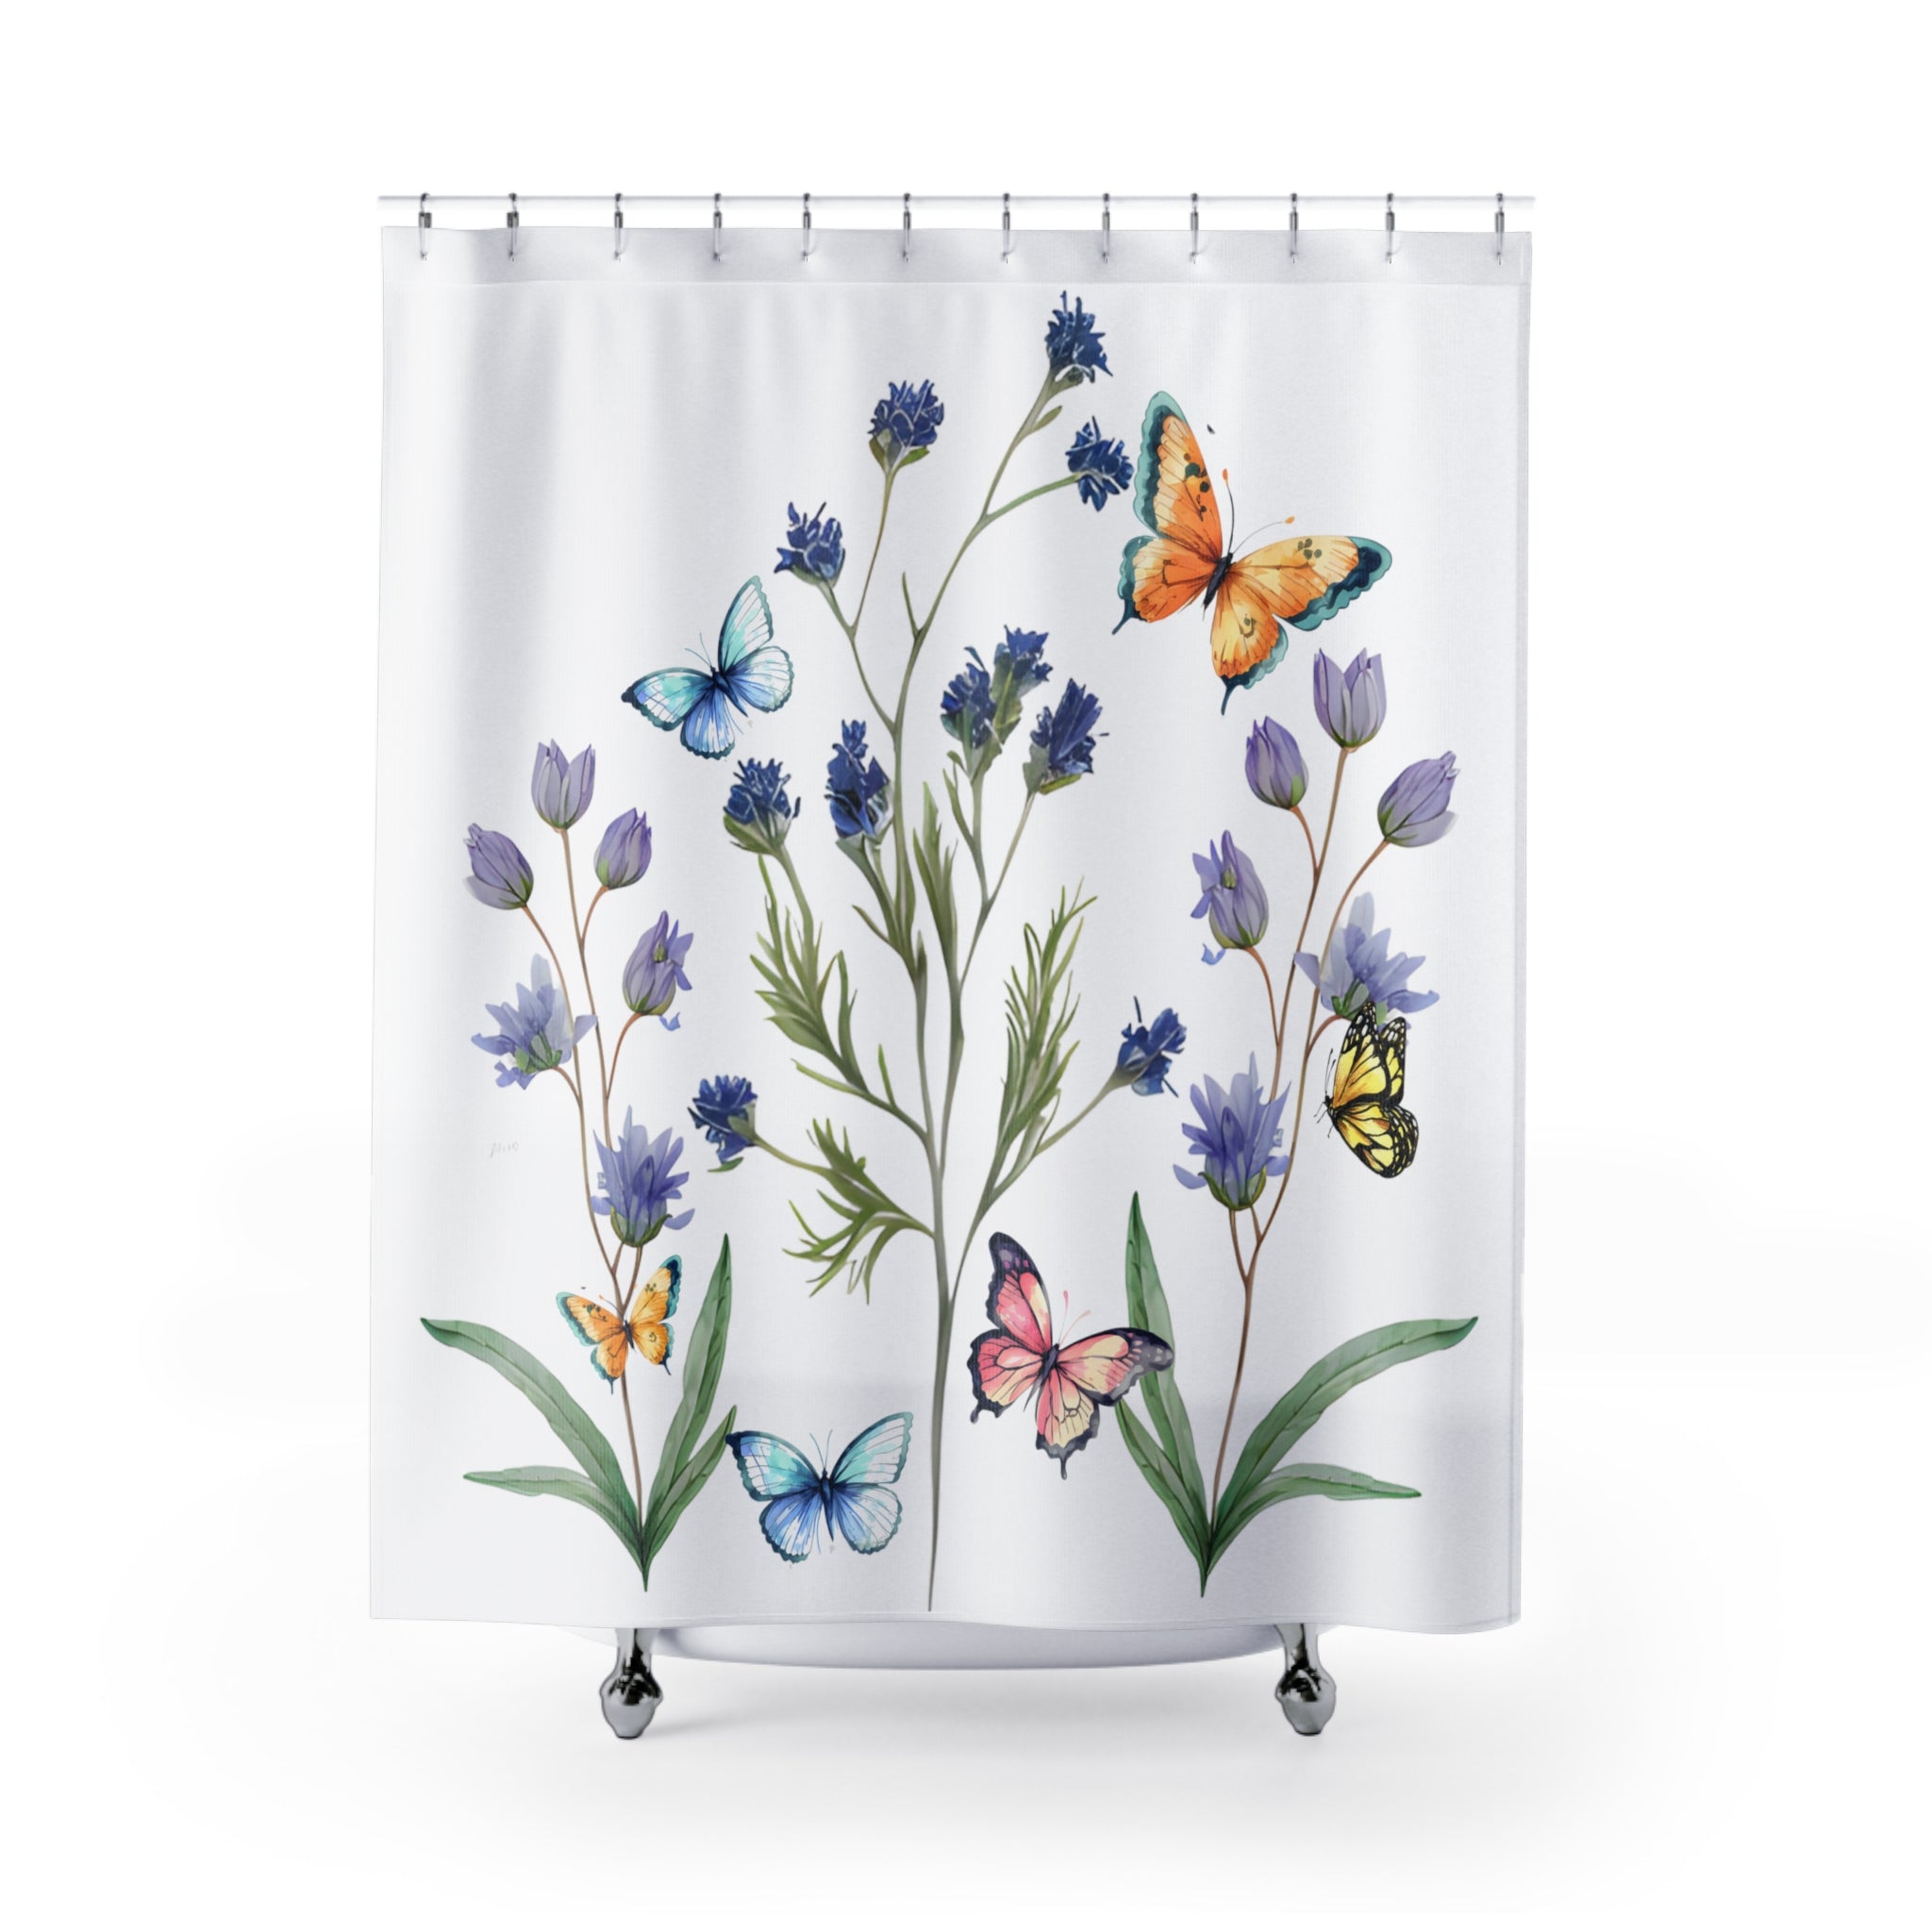 Garden theme shower curtain Flowers and Butterflies Shower Curtains 71 * 74